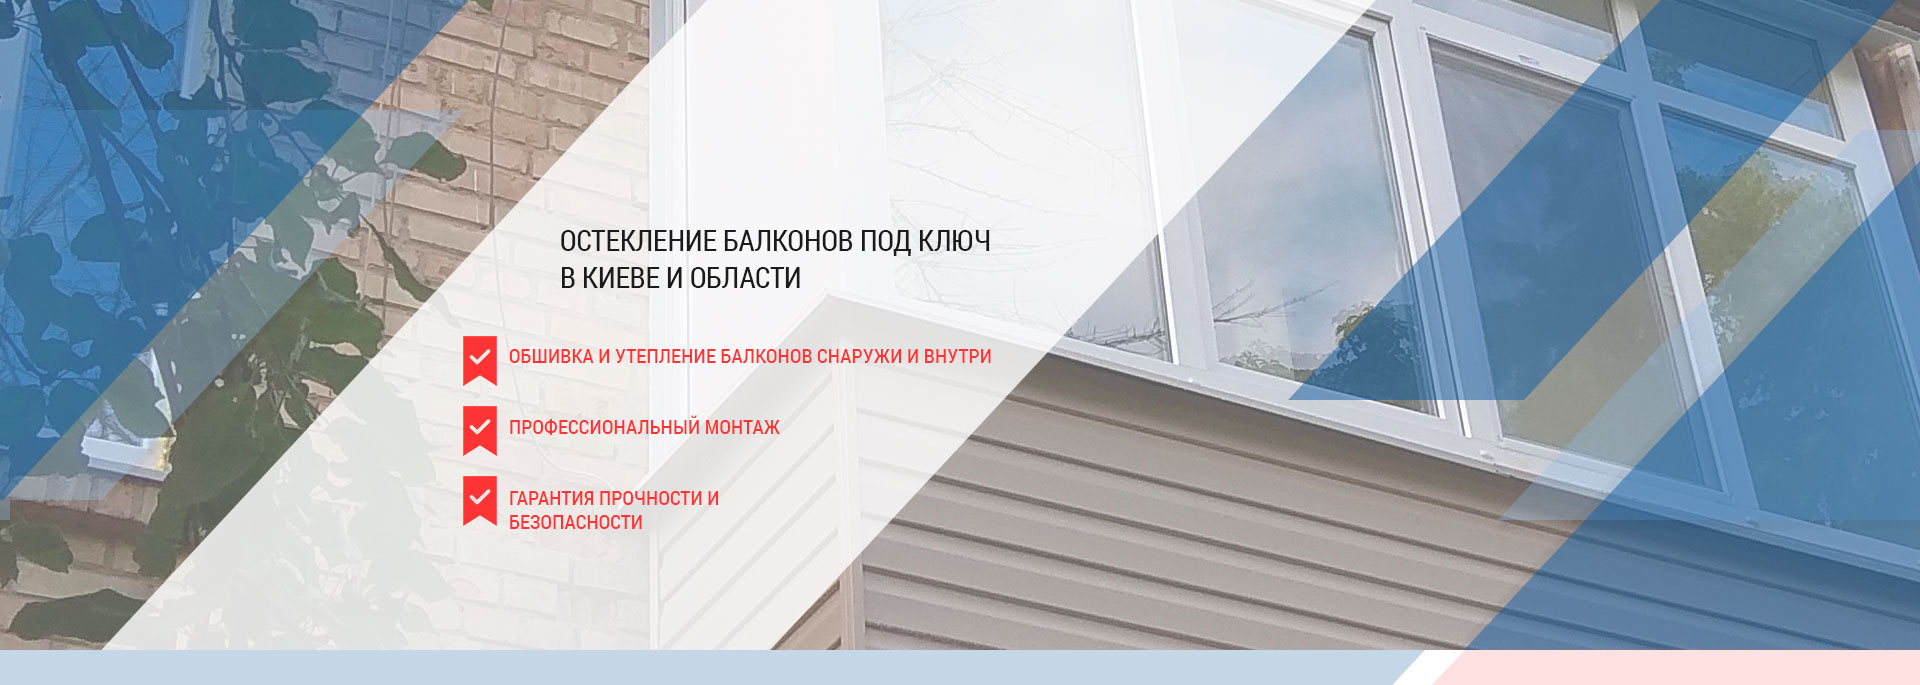 Заскління балконів під ключ в Києві та Київській області